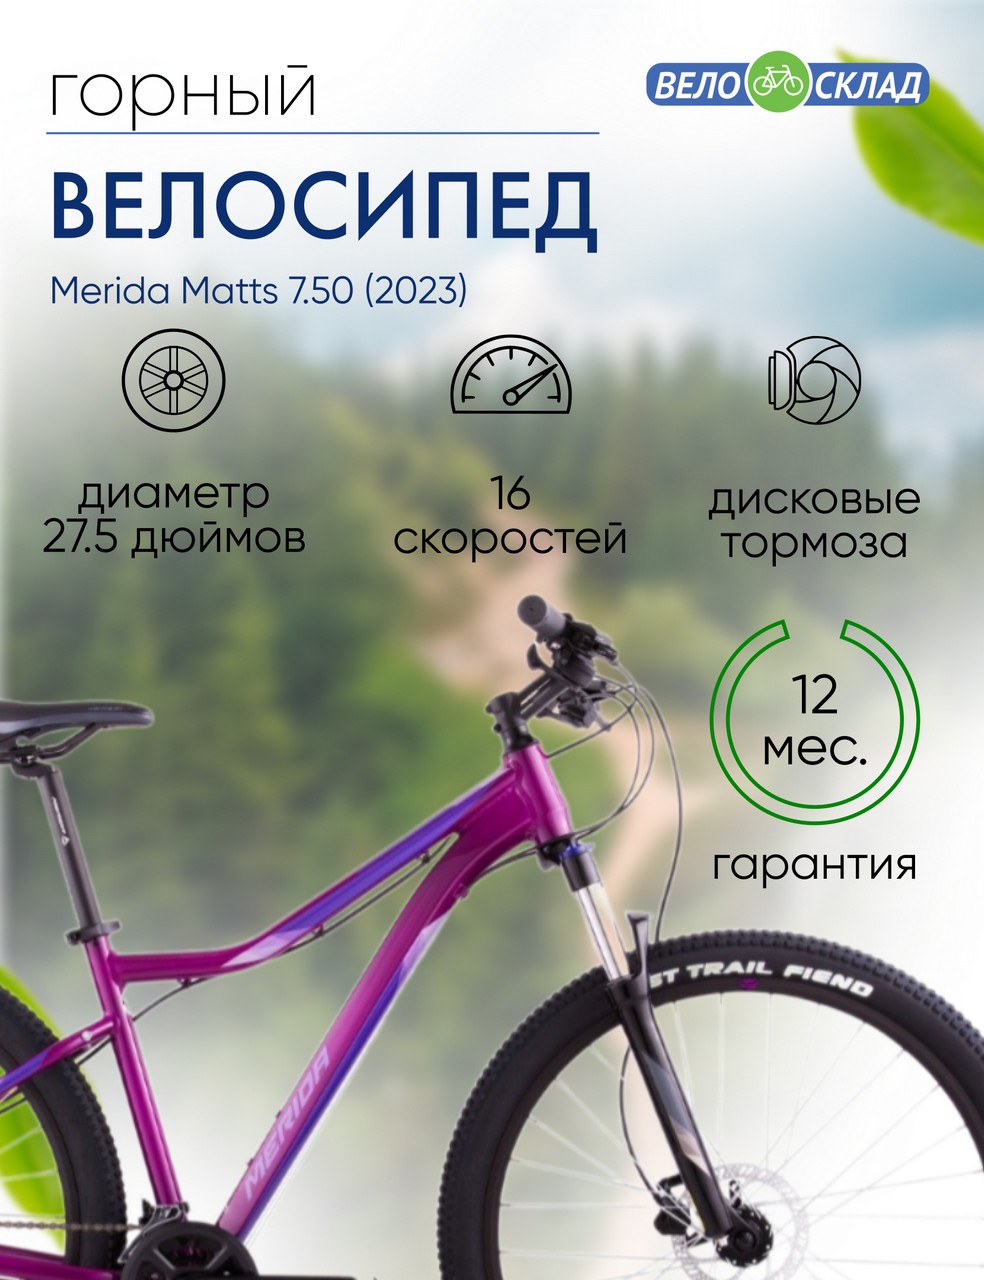 Женский велосипед Merida Matts 7.50, год 2023, цвет Фиолетовый, ростовка 13.5